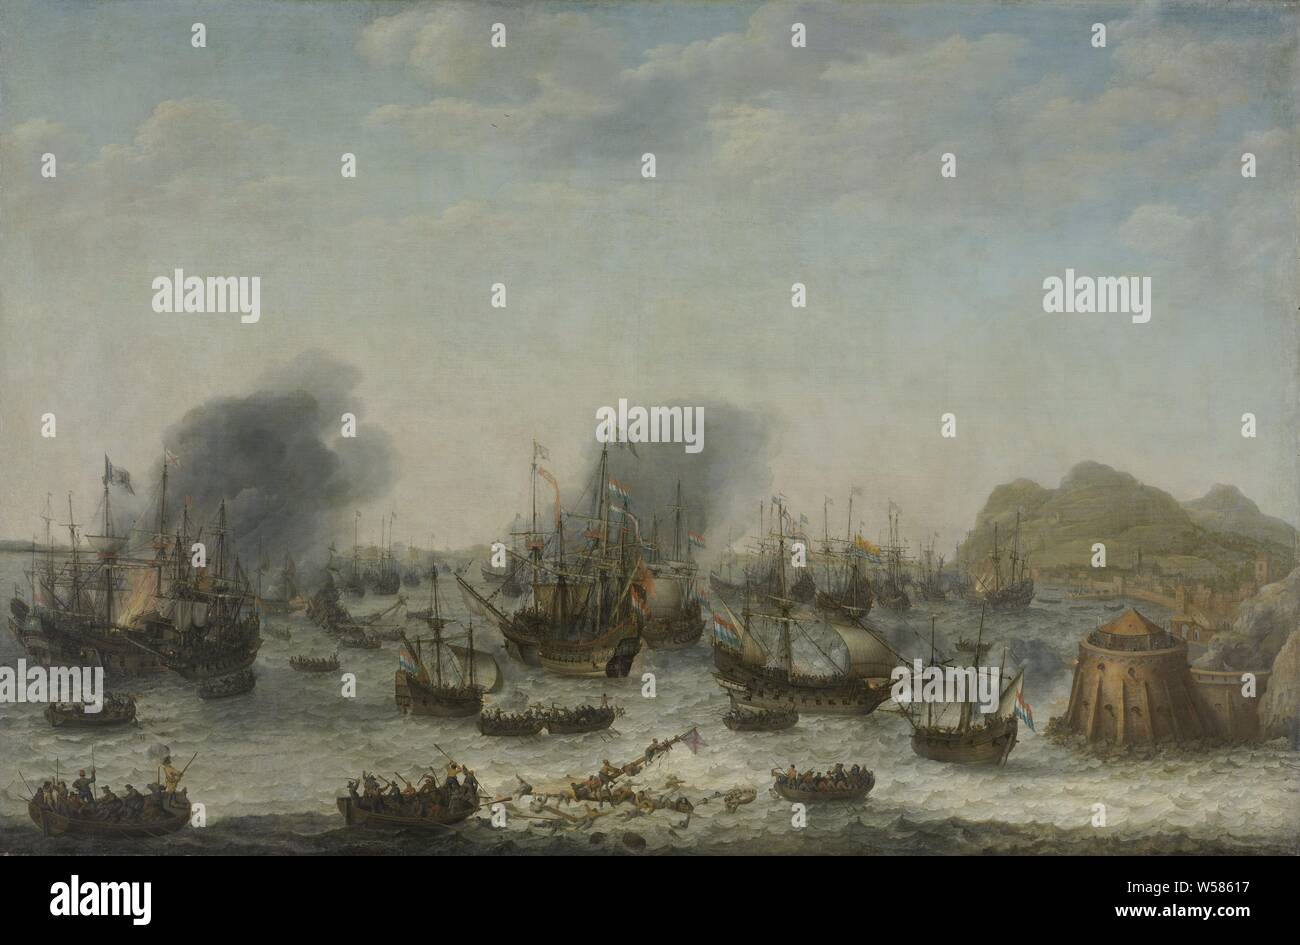 Bataille navale près de Gibraltar, 25 avril 1607 (victoire sur les Espagnols près de Gibraltar par une flotte commandée par l'amiral Jacob van Heemskerck) bataille navale, avec la victoire sur les Espagnols à Gibraltar par une flotte commandée par Jacob van Heemskerck Heemskerck, 25 avril 1607. La mer au large de la côte est pleine de vaisseaux de tirer sur l'autre, certains navires sont en feu. Au premier plan l'équipage d'un navire coulé tente de sauver lui-même en bataille, sloops (voile de navires), détroit de Gibraltar, l'amirauté d'Amsterdam, Jacob van Heemskerck, Adam Willaerts (signé par l'artiste), 1639, toile, de la peinture à l'huile (peinture Banque D'Images